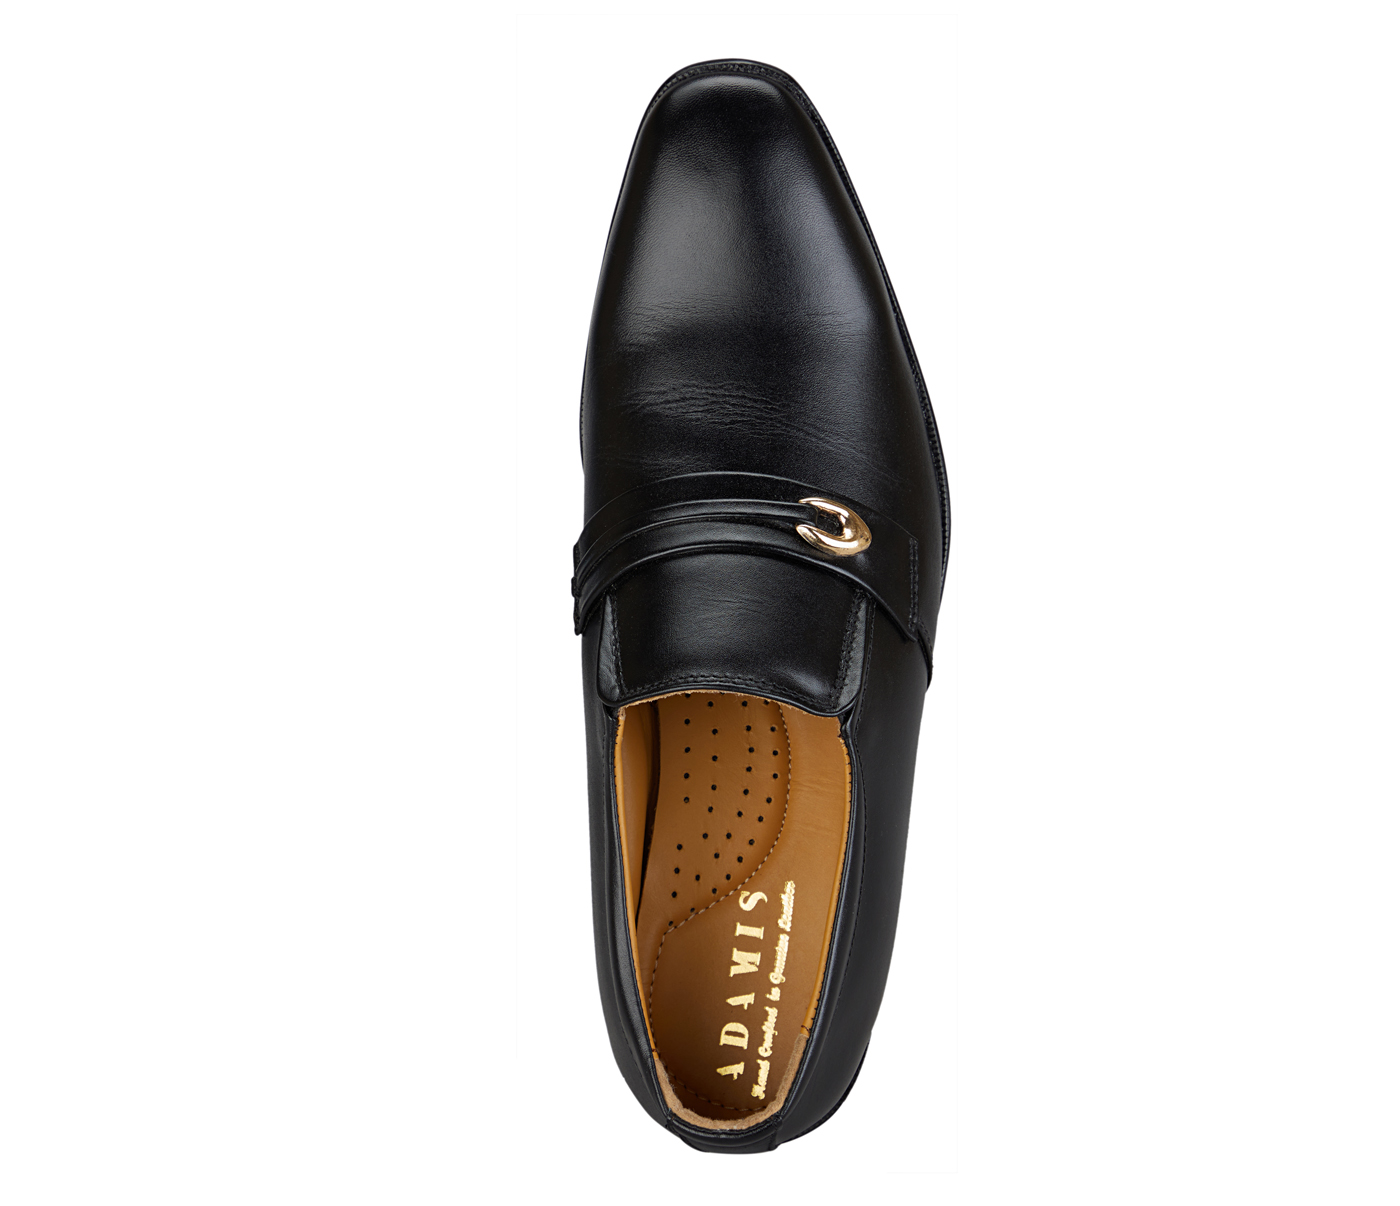 Footwear-Adamis Pure Leather Footwear For Men- - Black